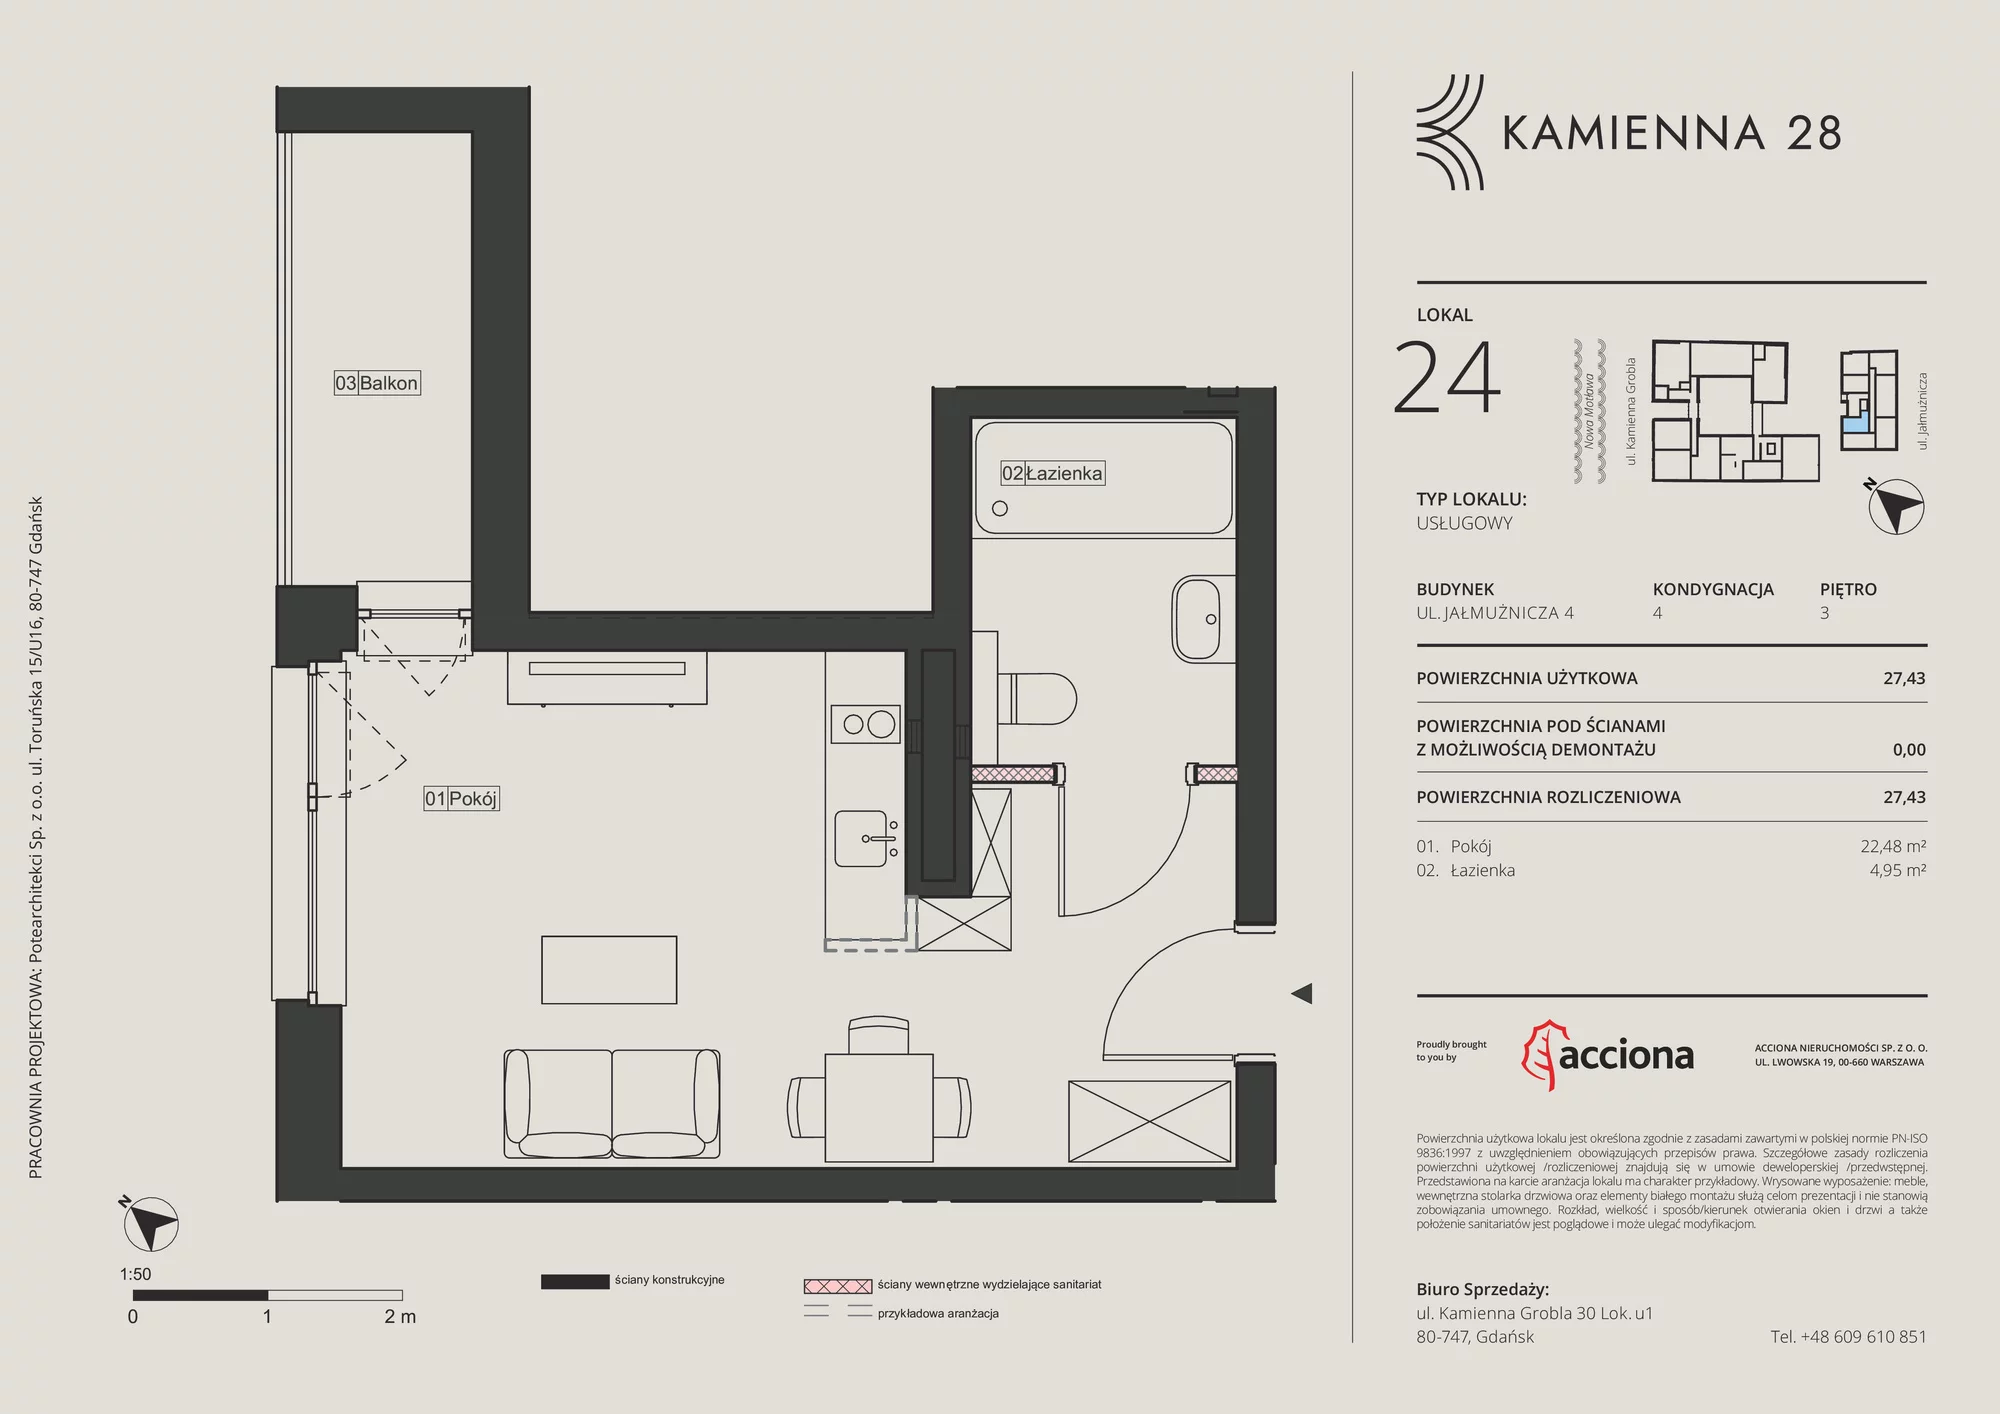 Apartament inwestycyjny 27,43 m², piętro 3, oferta nr 4.24, Kamienna 28 - apartamenty inwestycyjne, Gdańsk, Śródmieście, Dolne Miasto, ul. Jałmużnicza 4